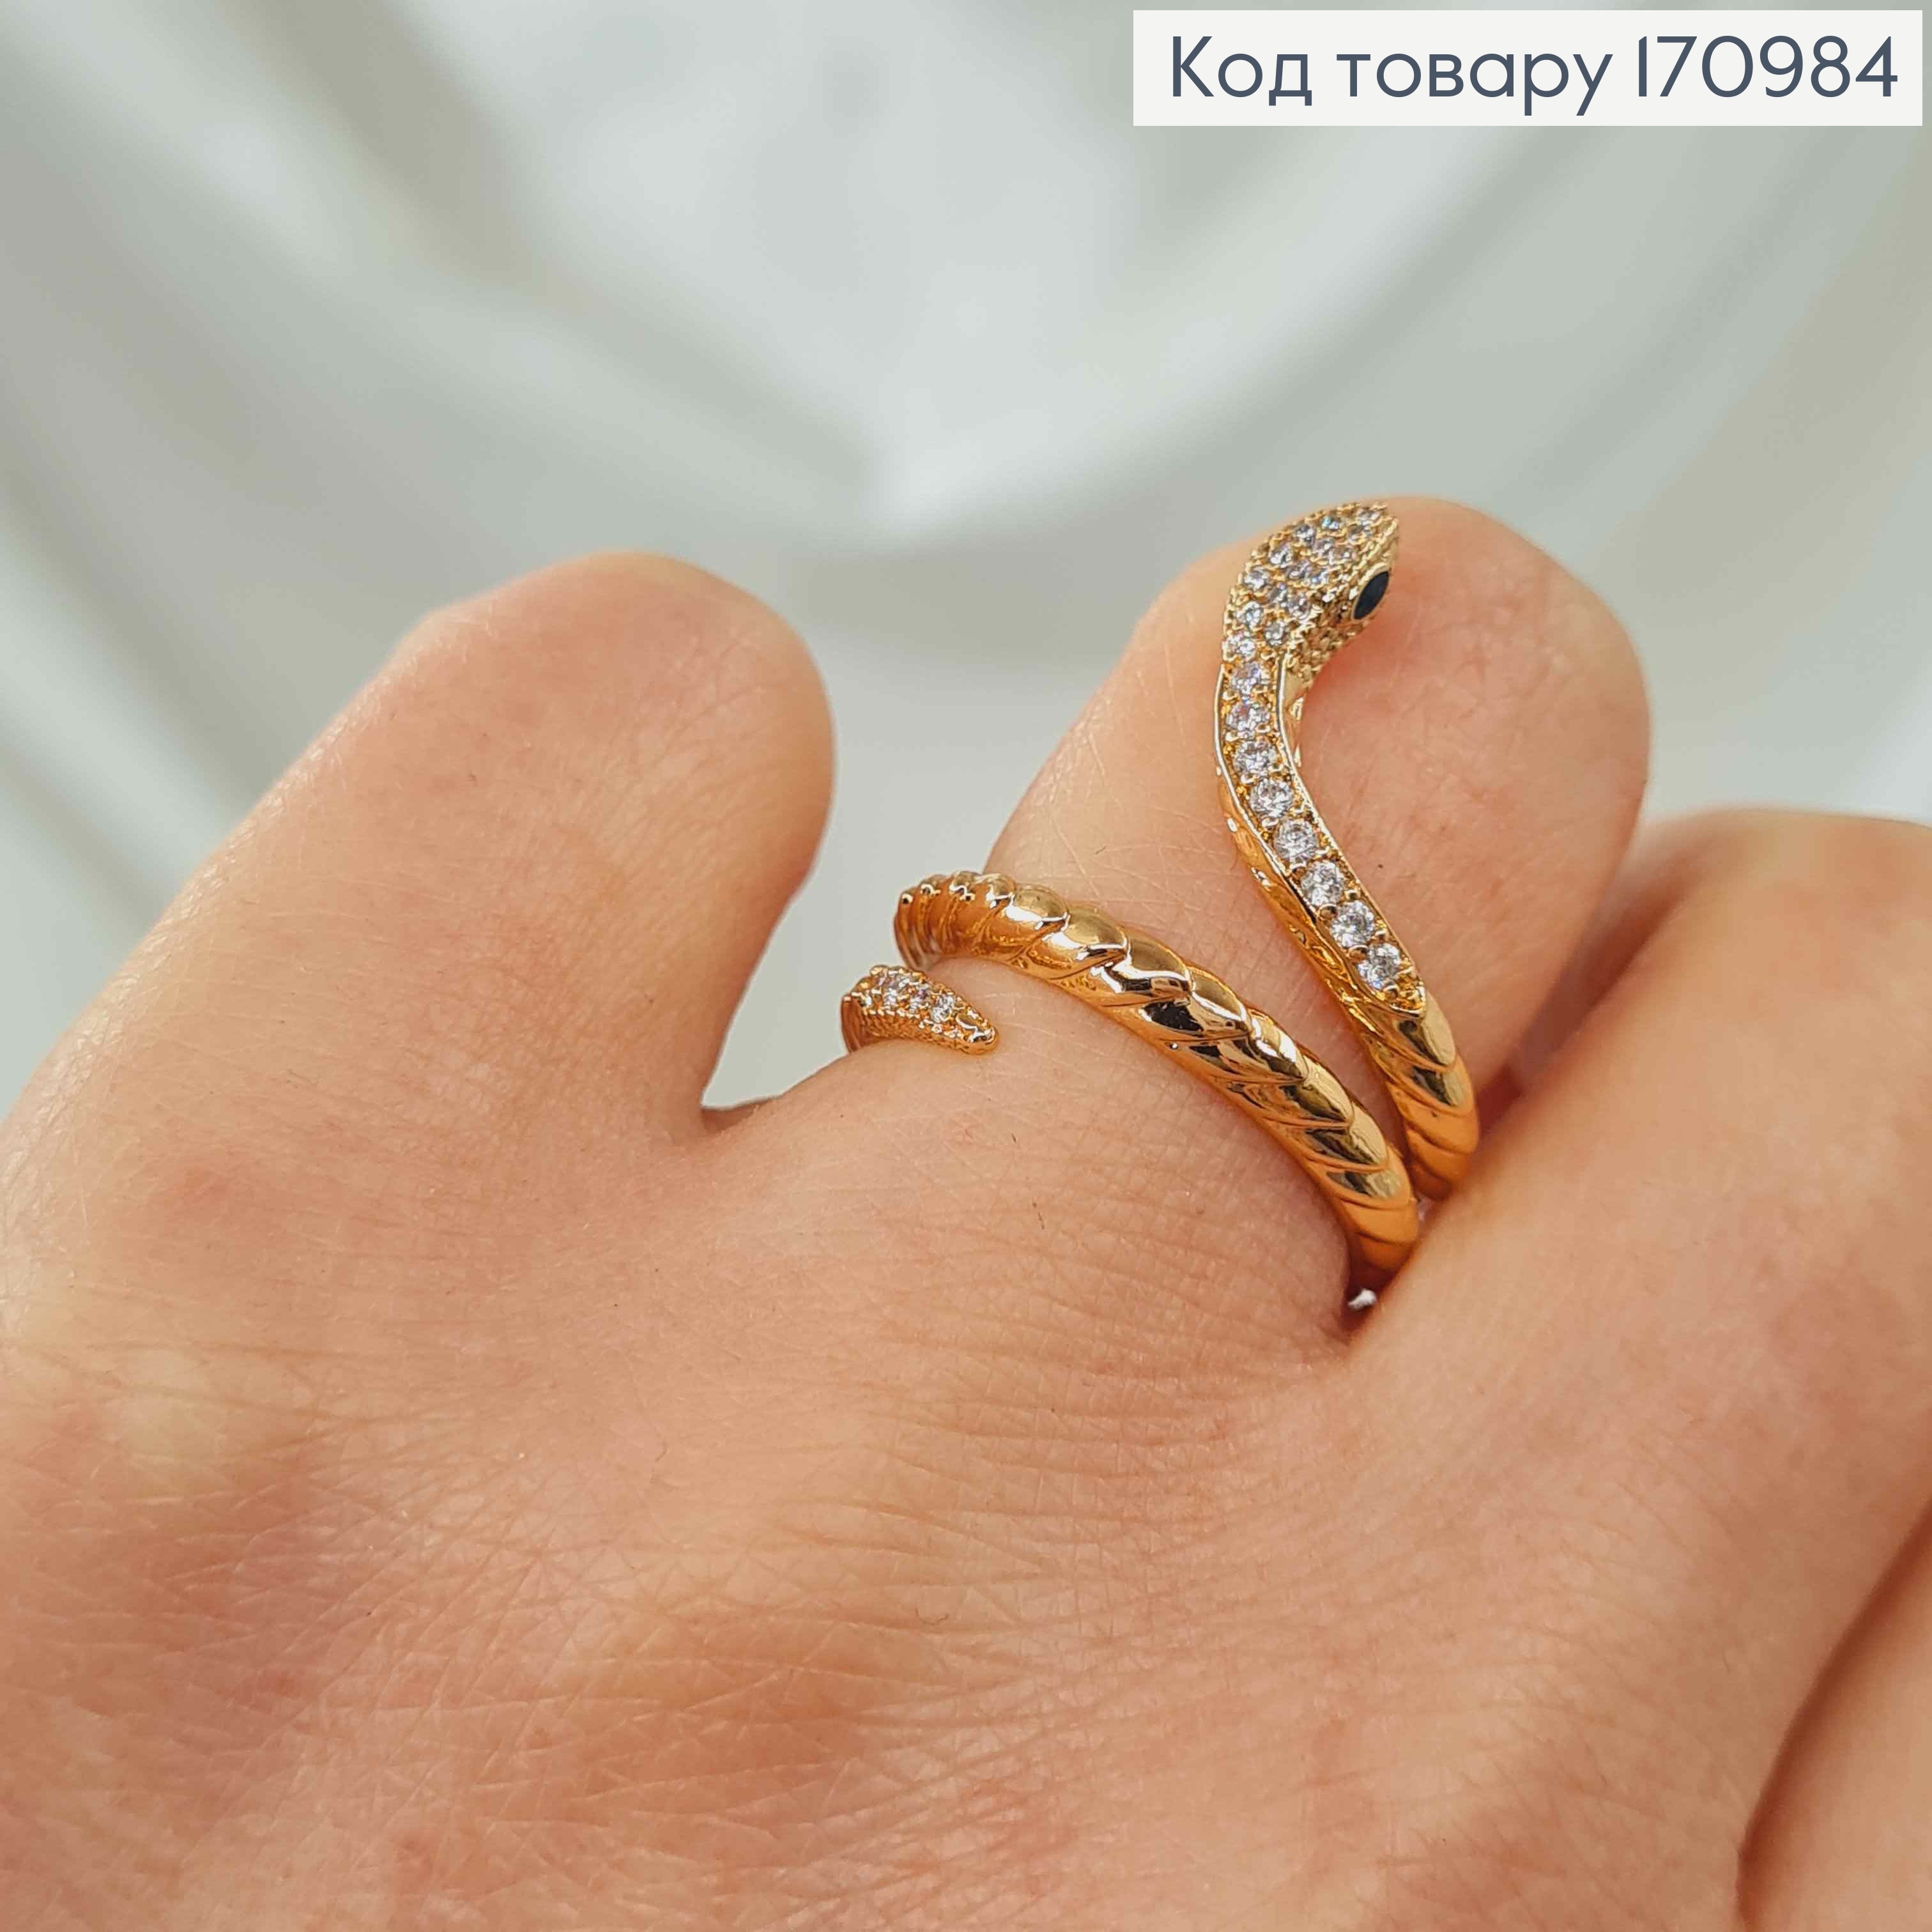 Кольцо Змейка, фактурный в камнях, Xuping 18K 170984 фото 2